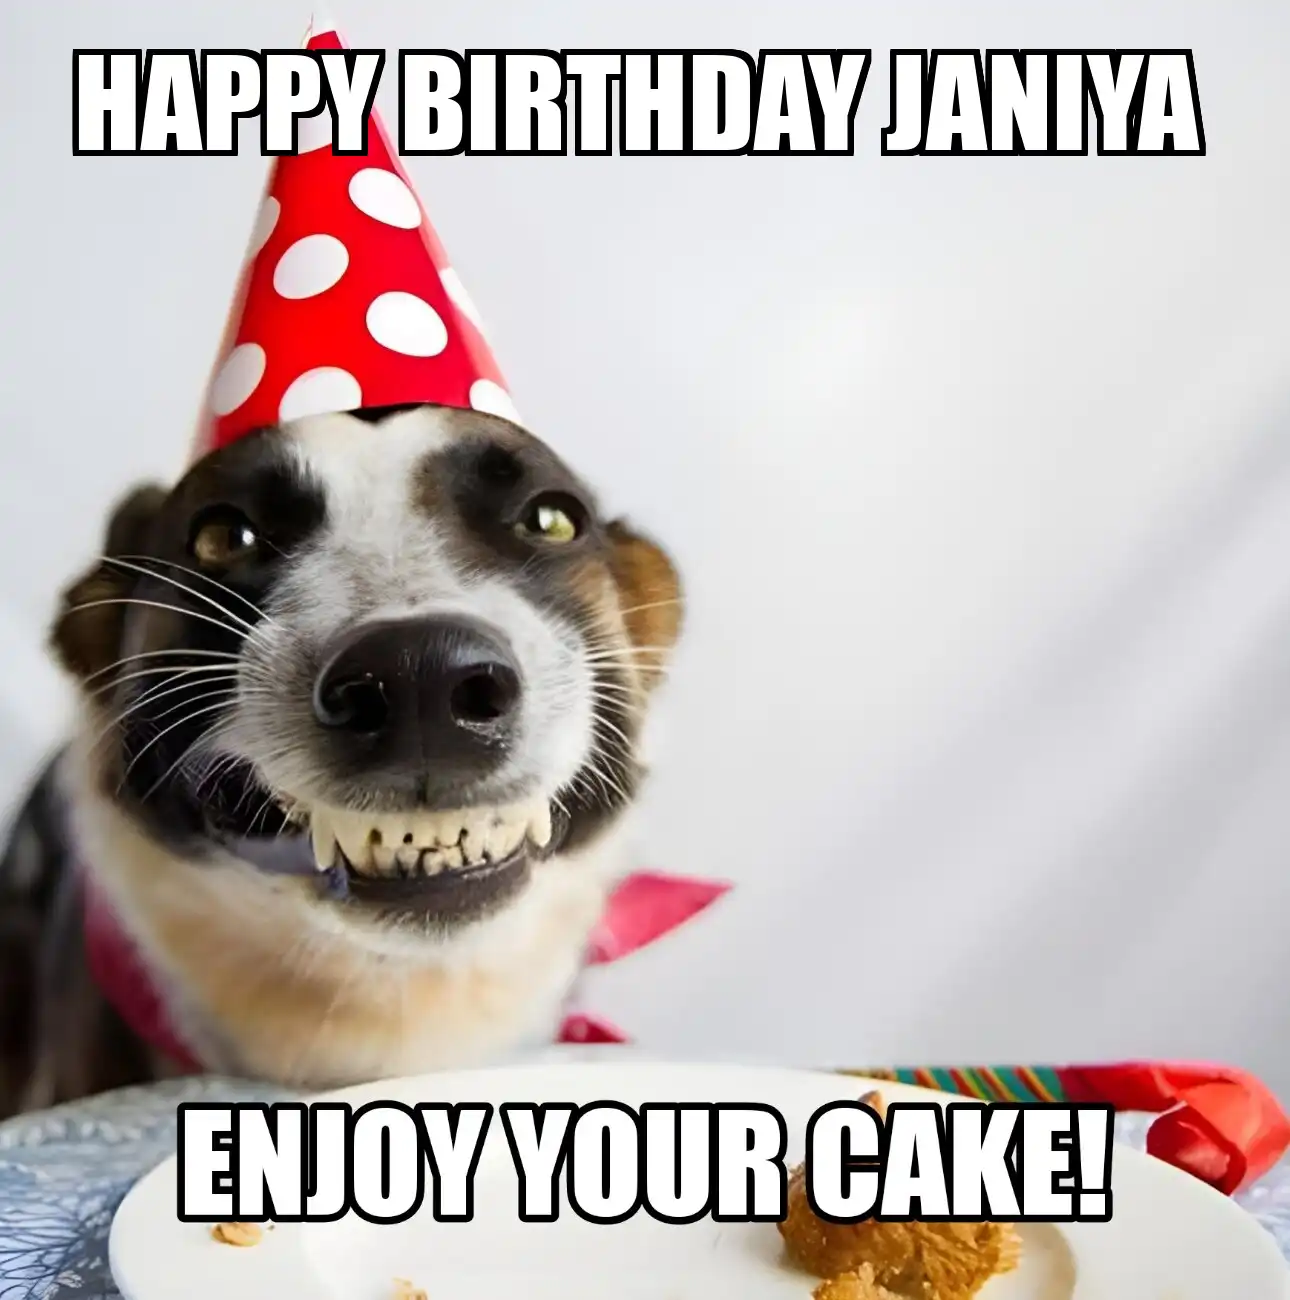 Happy Birthday Janiya Enjoy Your Cake Dog Meme